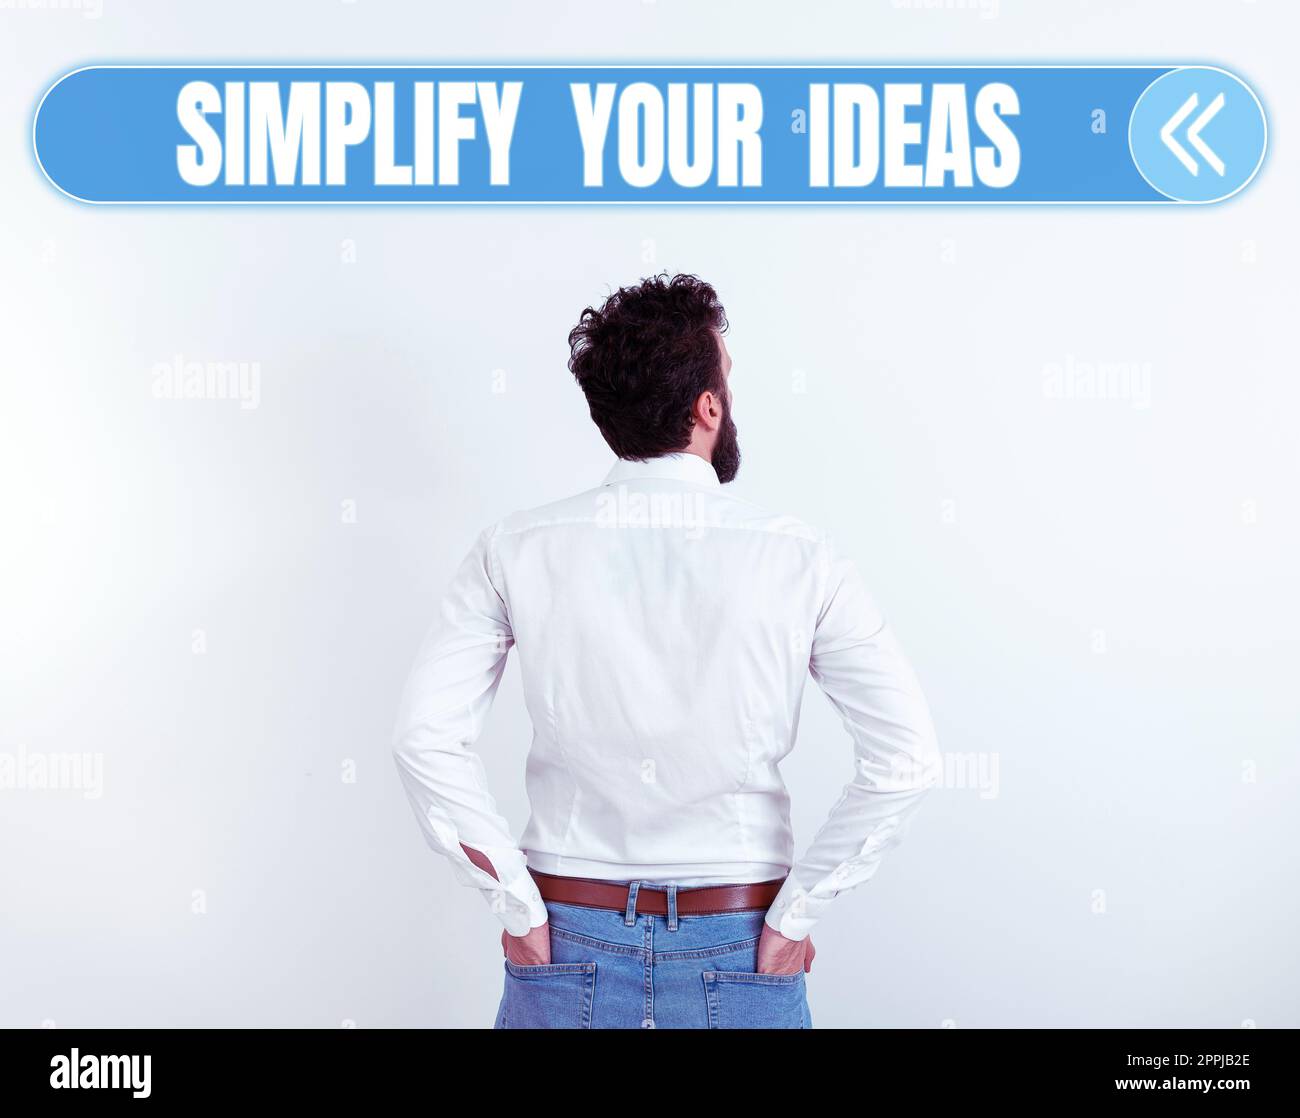 Visualizzazione di cartelli semplifica le tue idee. Vetrina aziendale rendere semplice o ridurre le cose a base di elementi essenziali Foto Stock